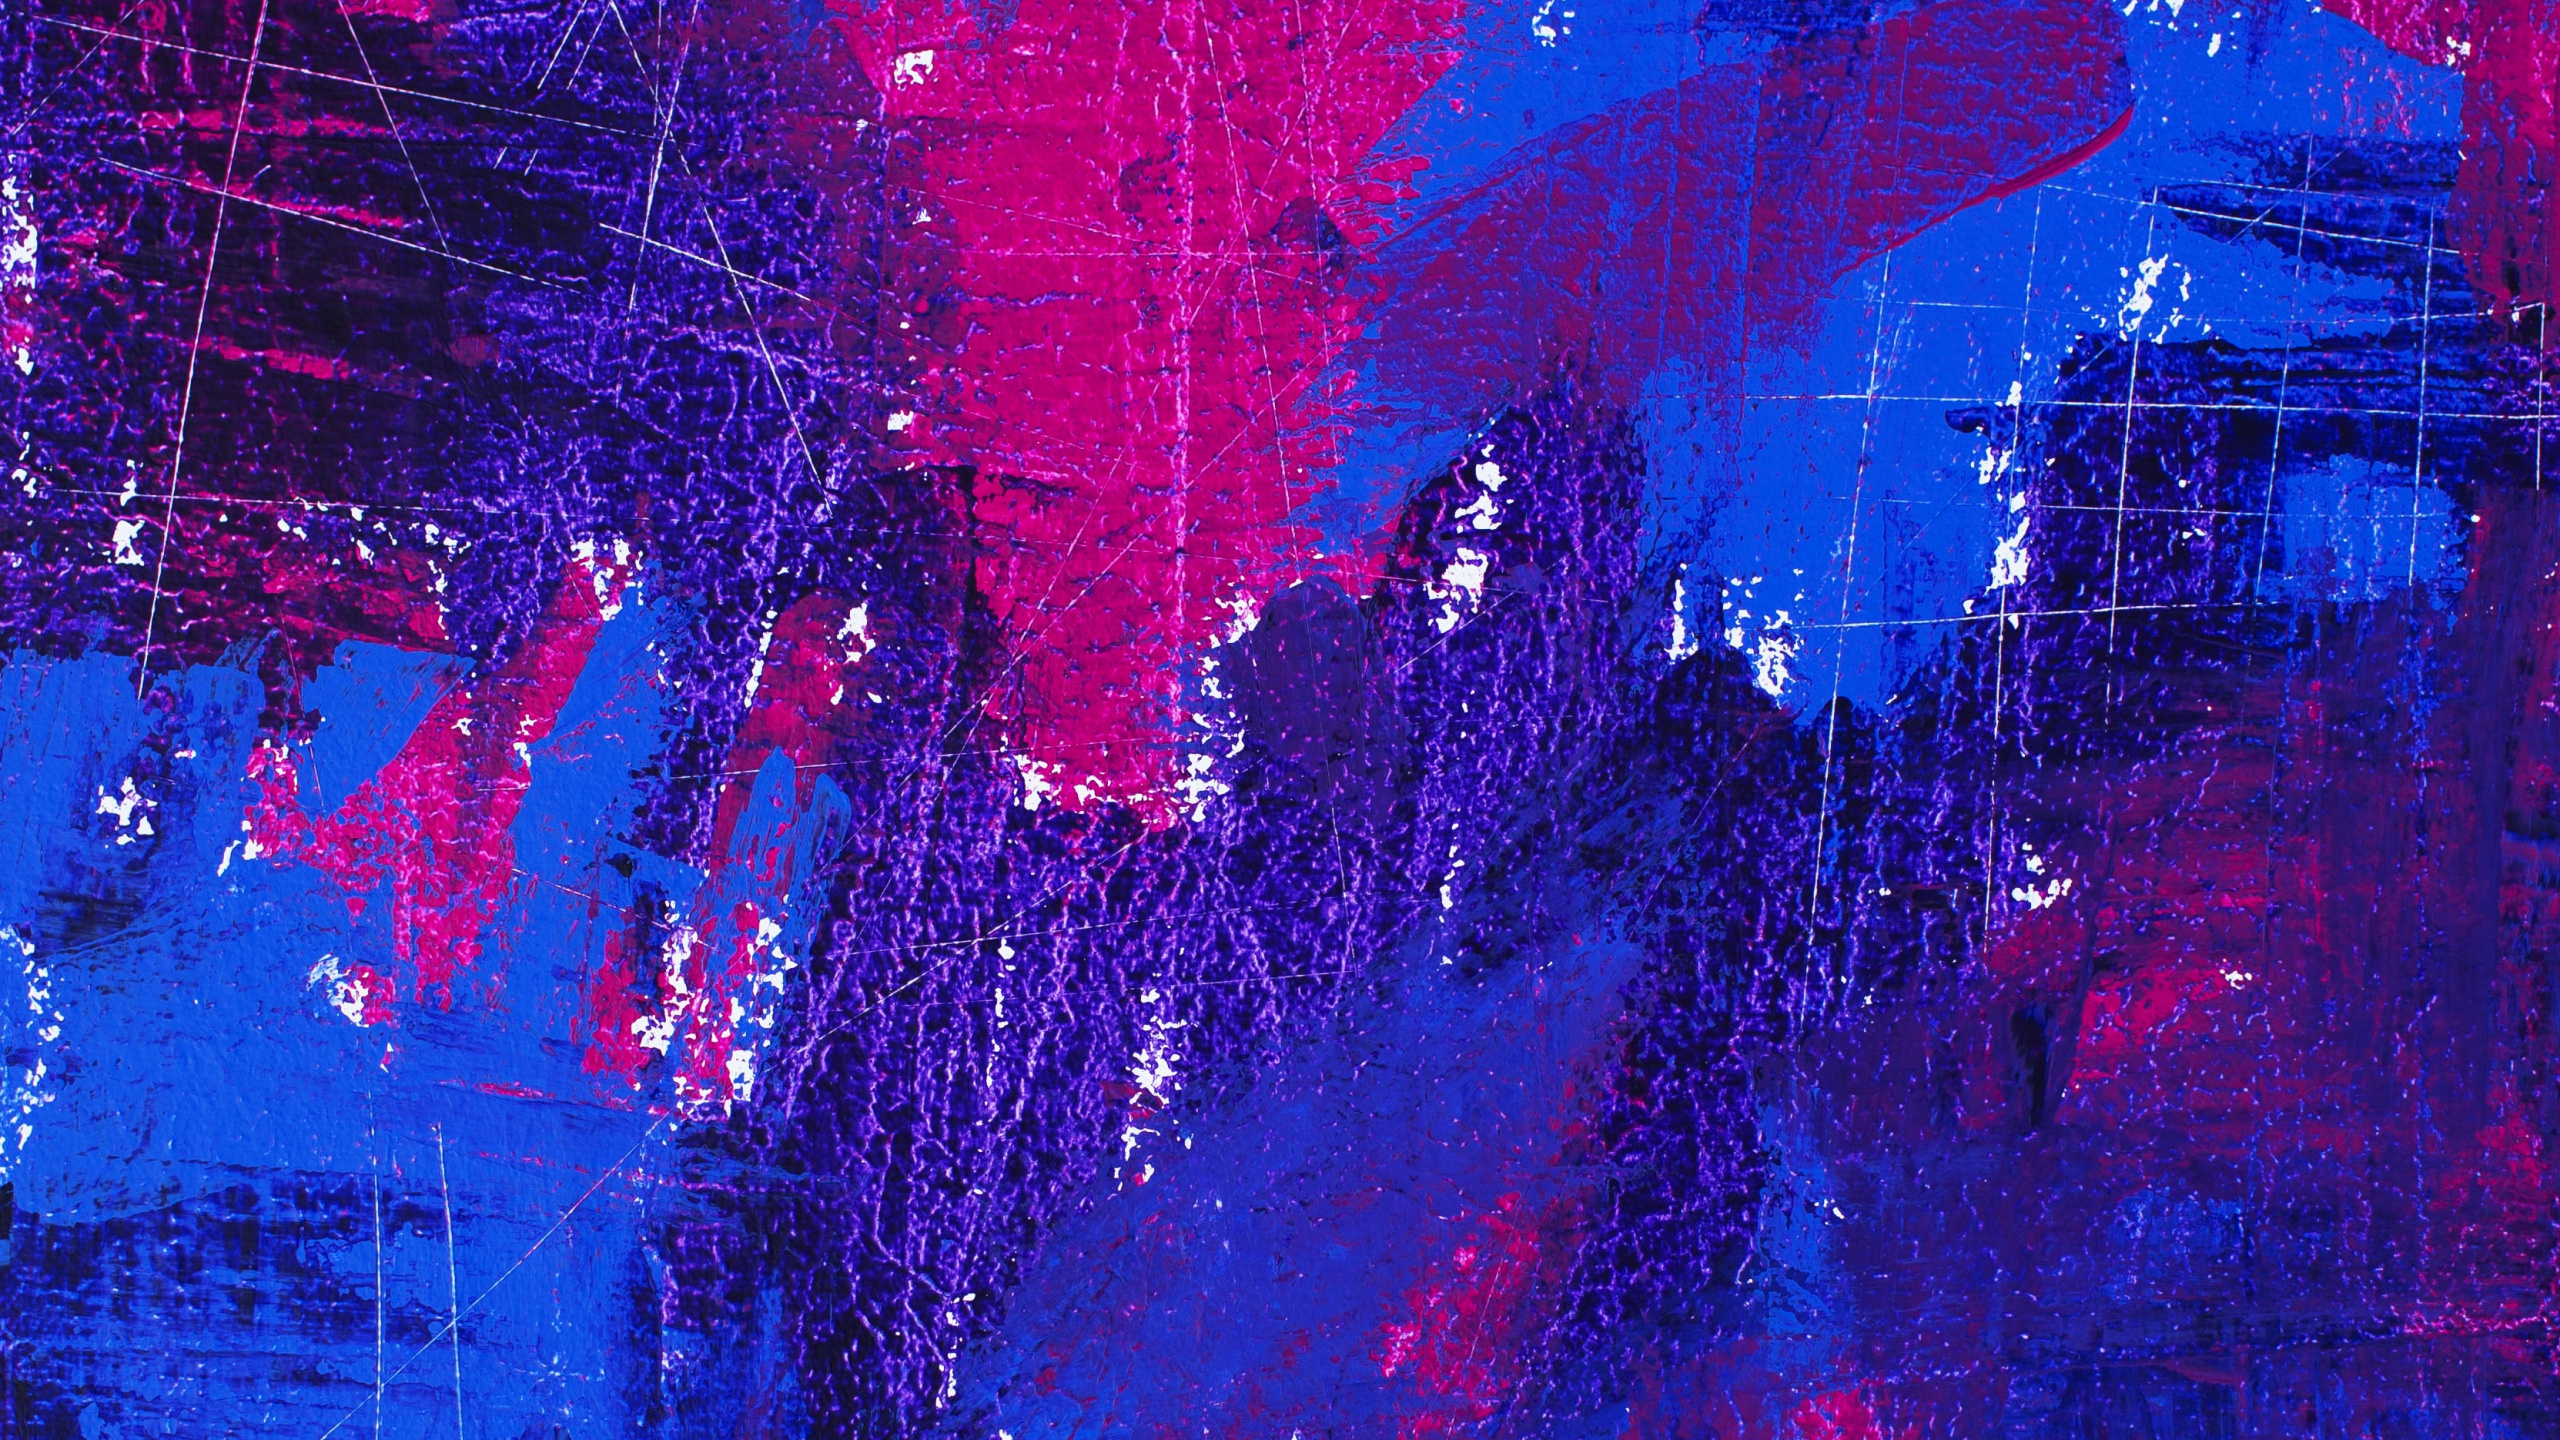 L'art Moderne, Peinture Acrylique, Art, Blue, Bleu de Cobalt. Wallpaper in 2560x1440 Resolution